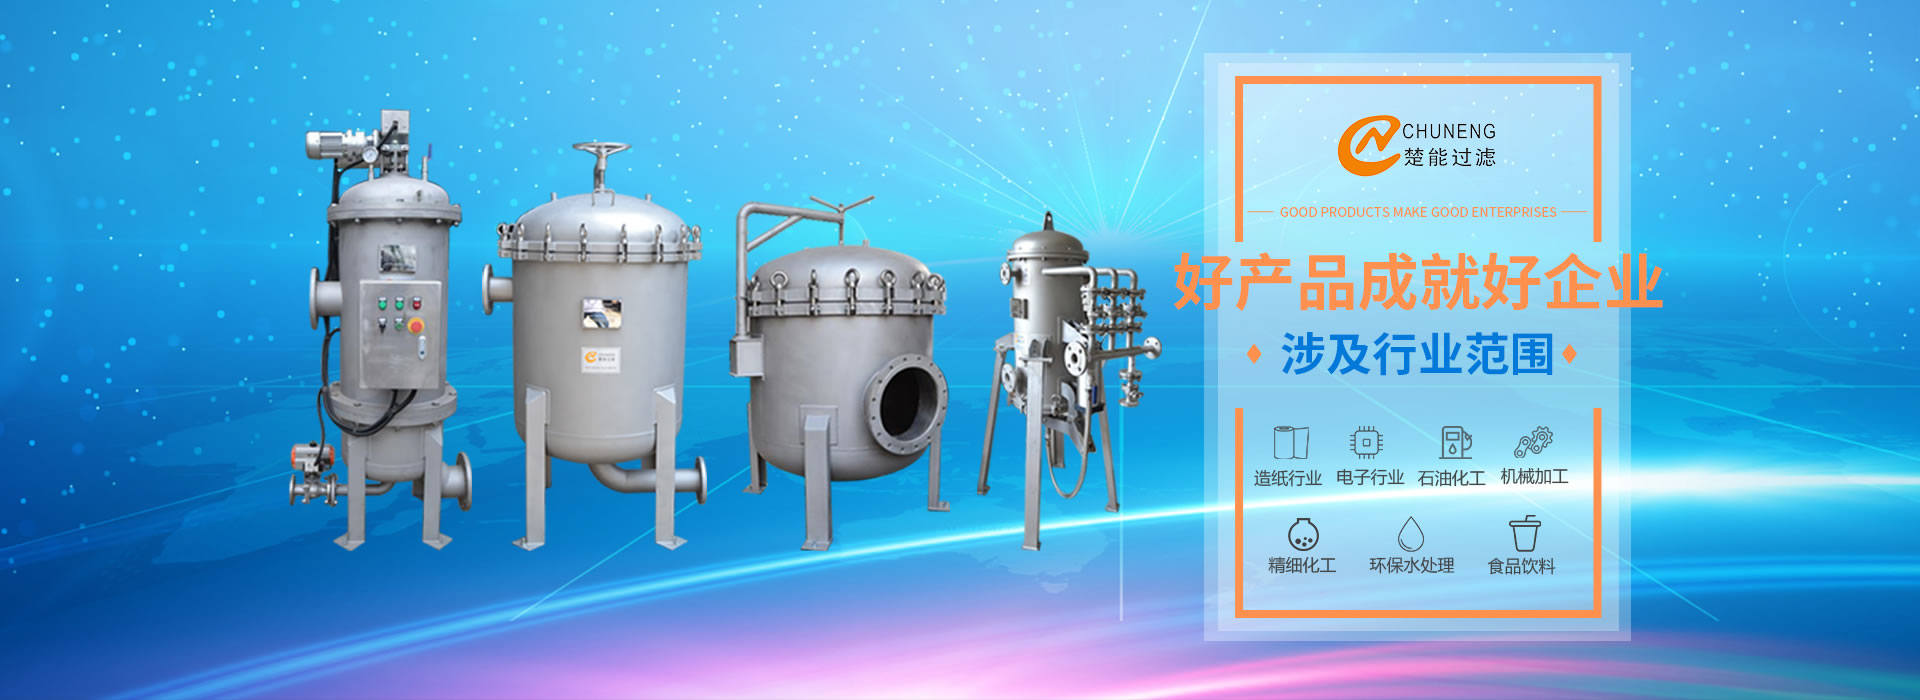 上海楚能工業過濾系統有限公司是集研發、制造、銷售/服務于一體的過濾設備與過濾元件專業生產廠家